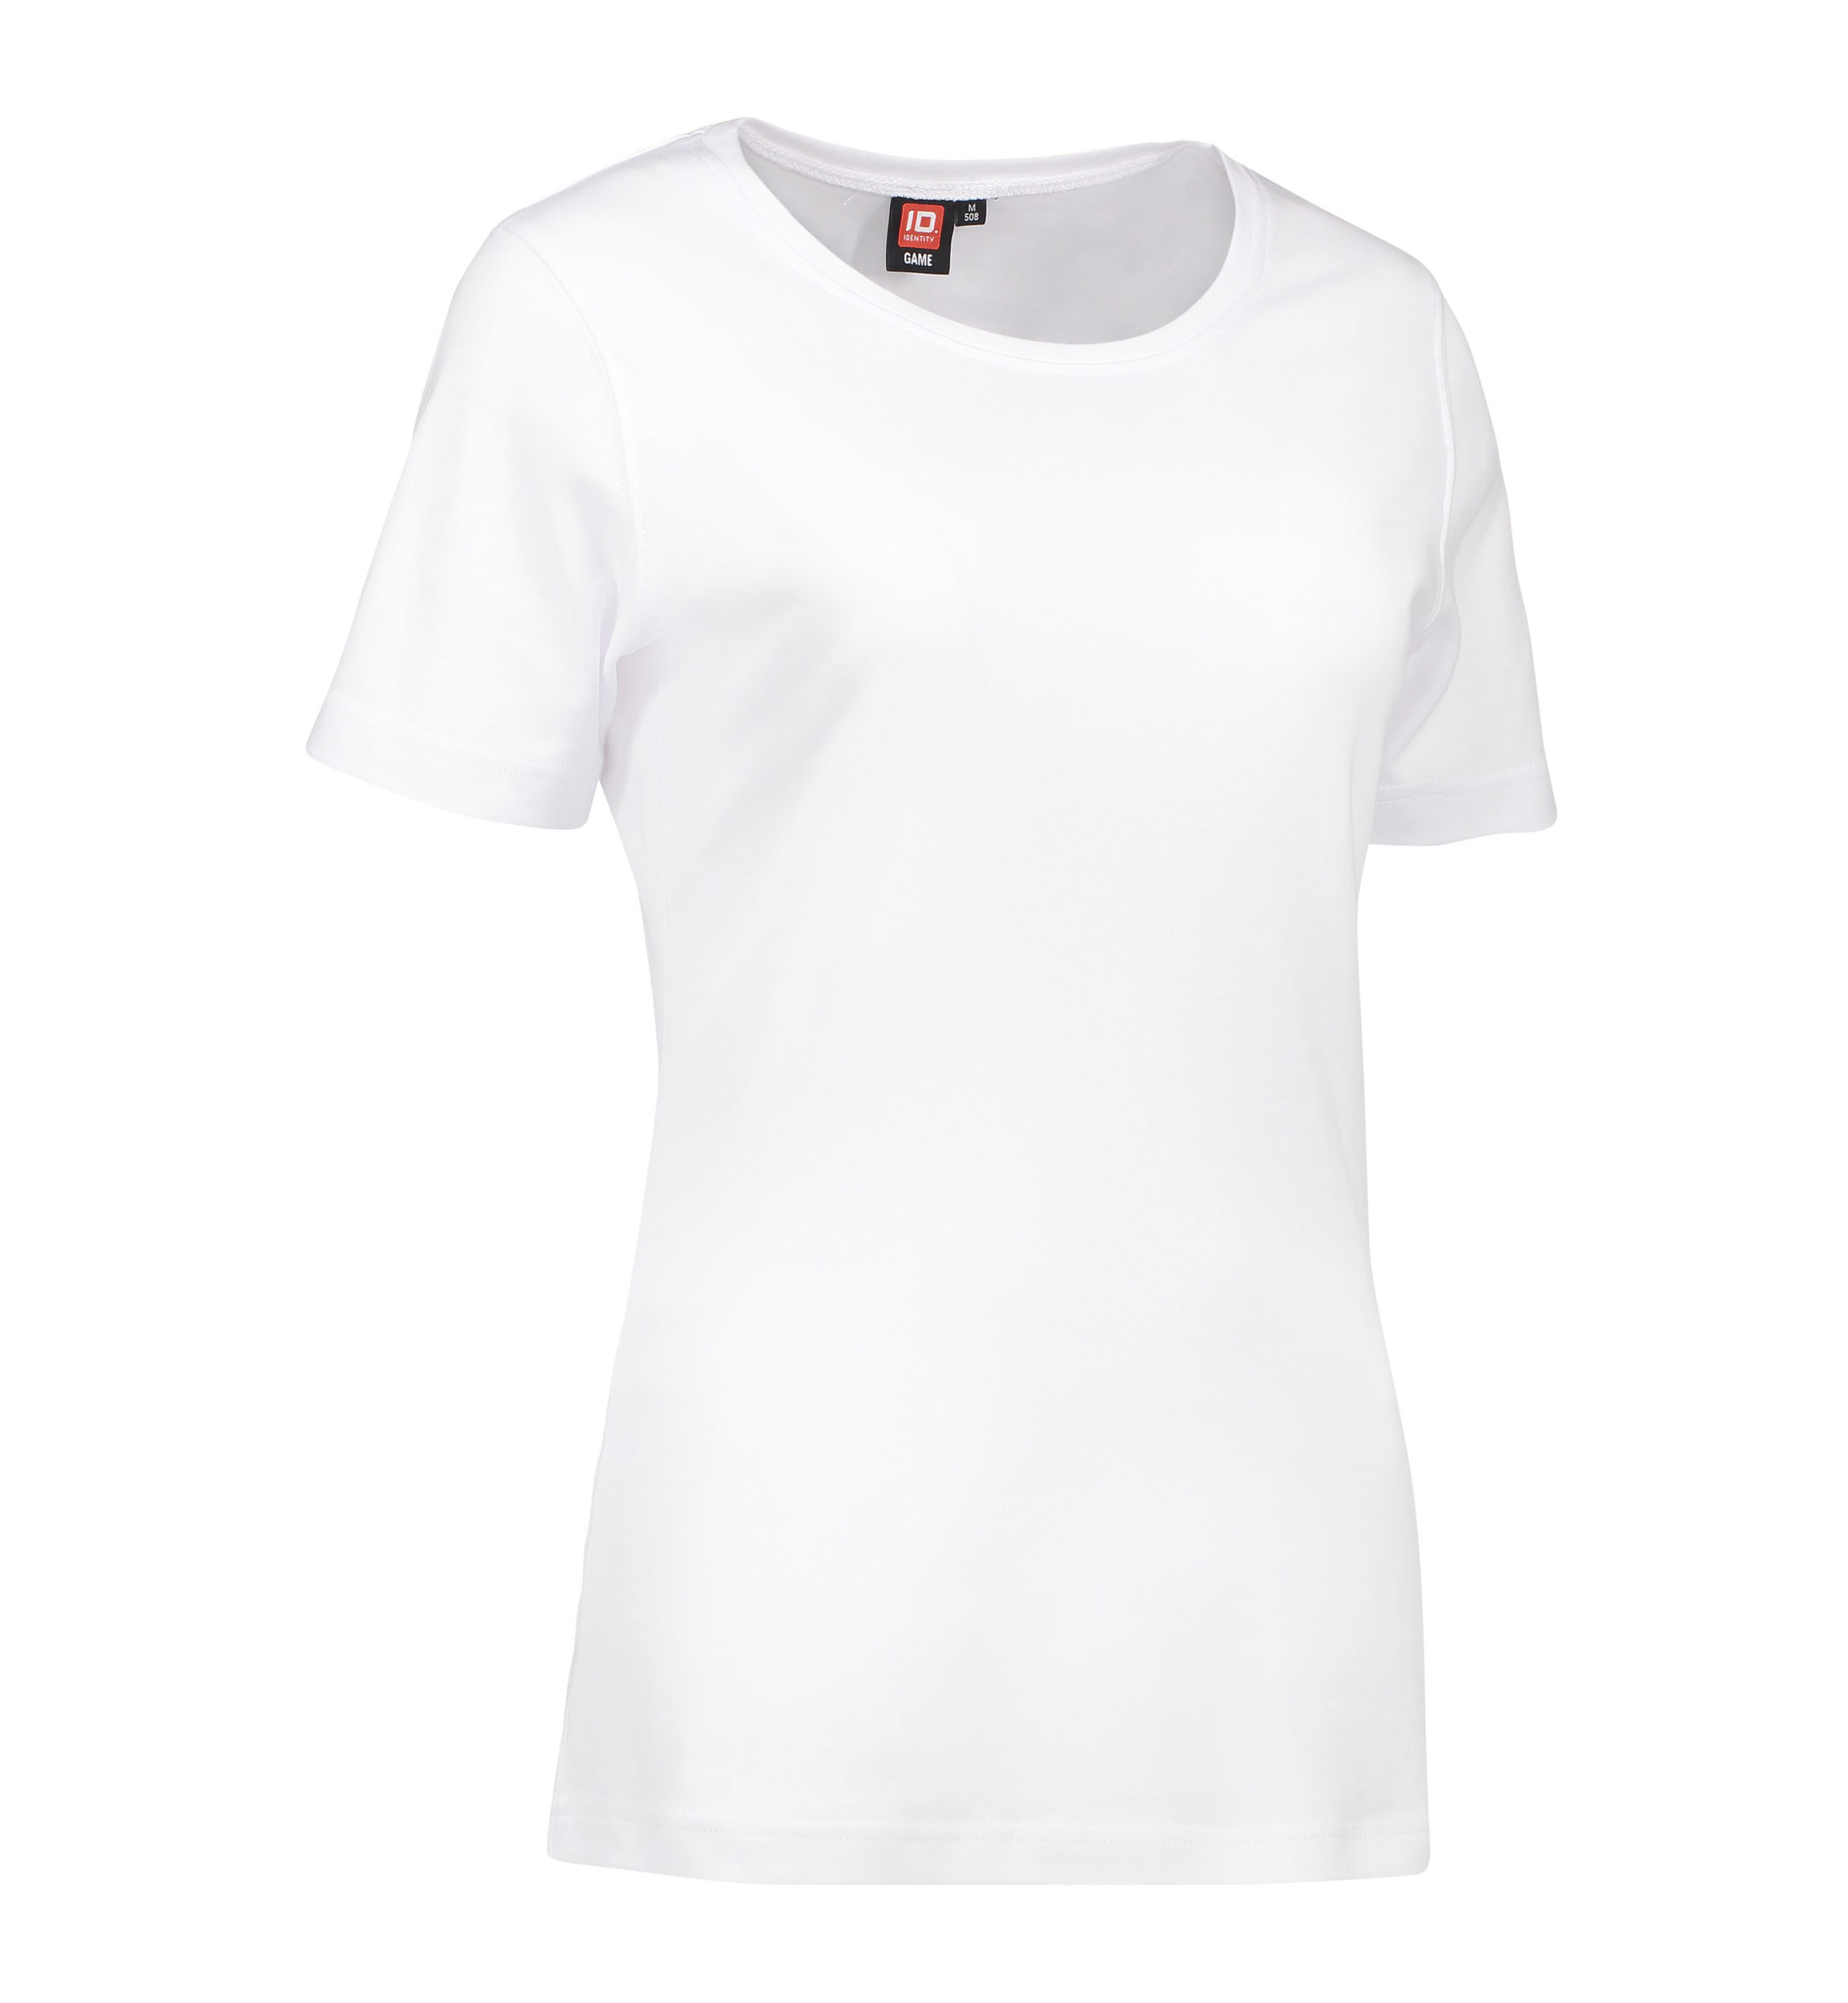 Billede af Dame t-shirt med rund hals i hvid - 2XL hos Sygeplejebutikken.dk